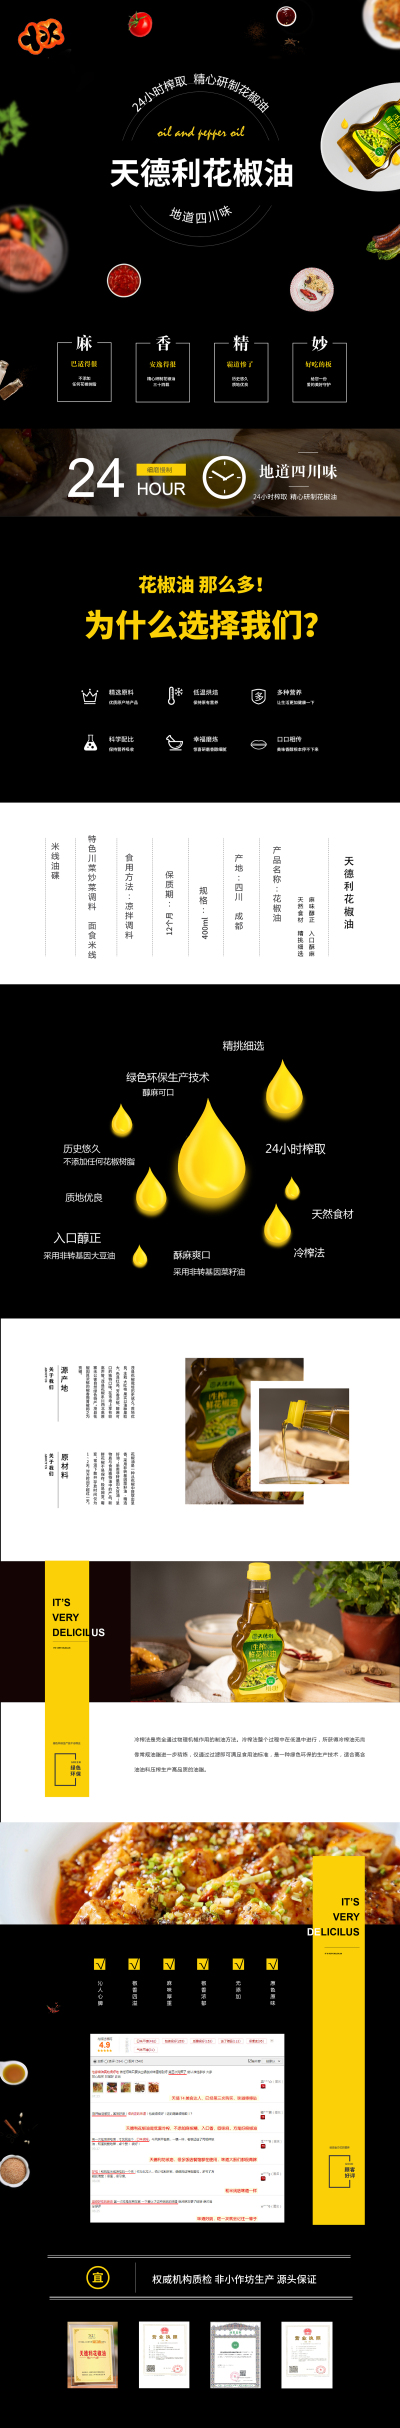 花椒油淘宝详情页设计